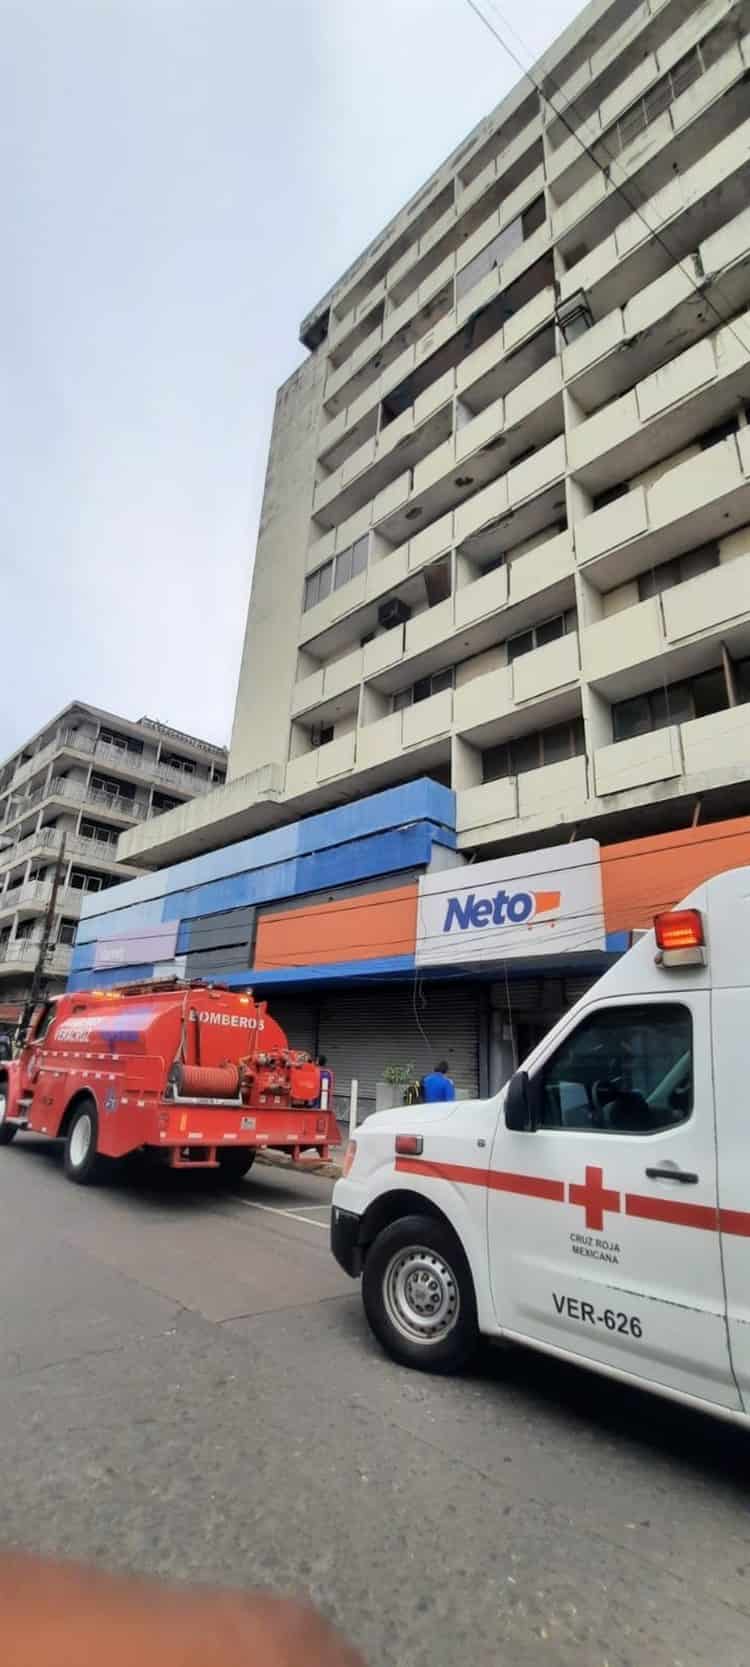 Se registró conato de incendio en edificio ubicado en el Centro Histórico de Veracruz